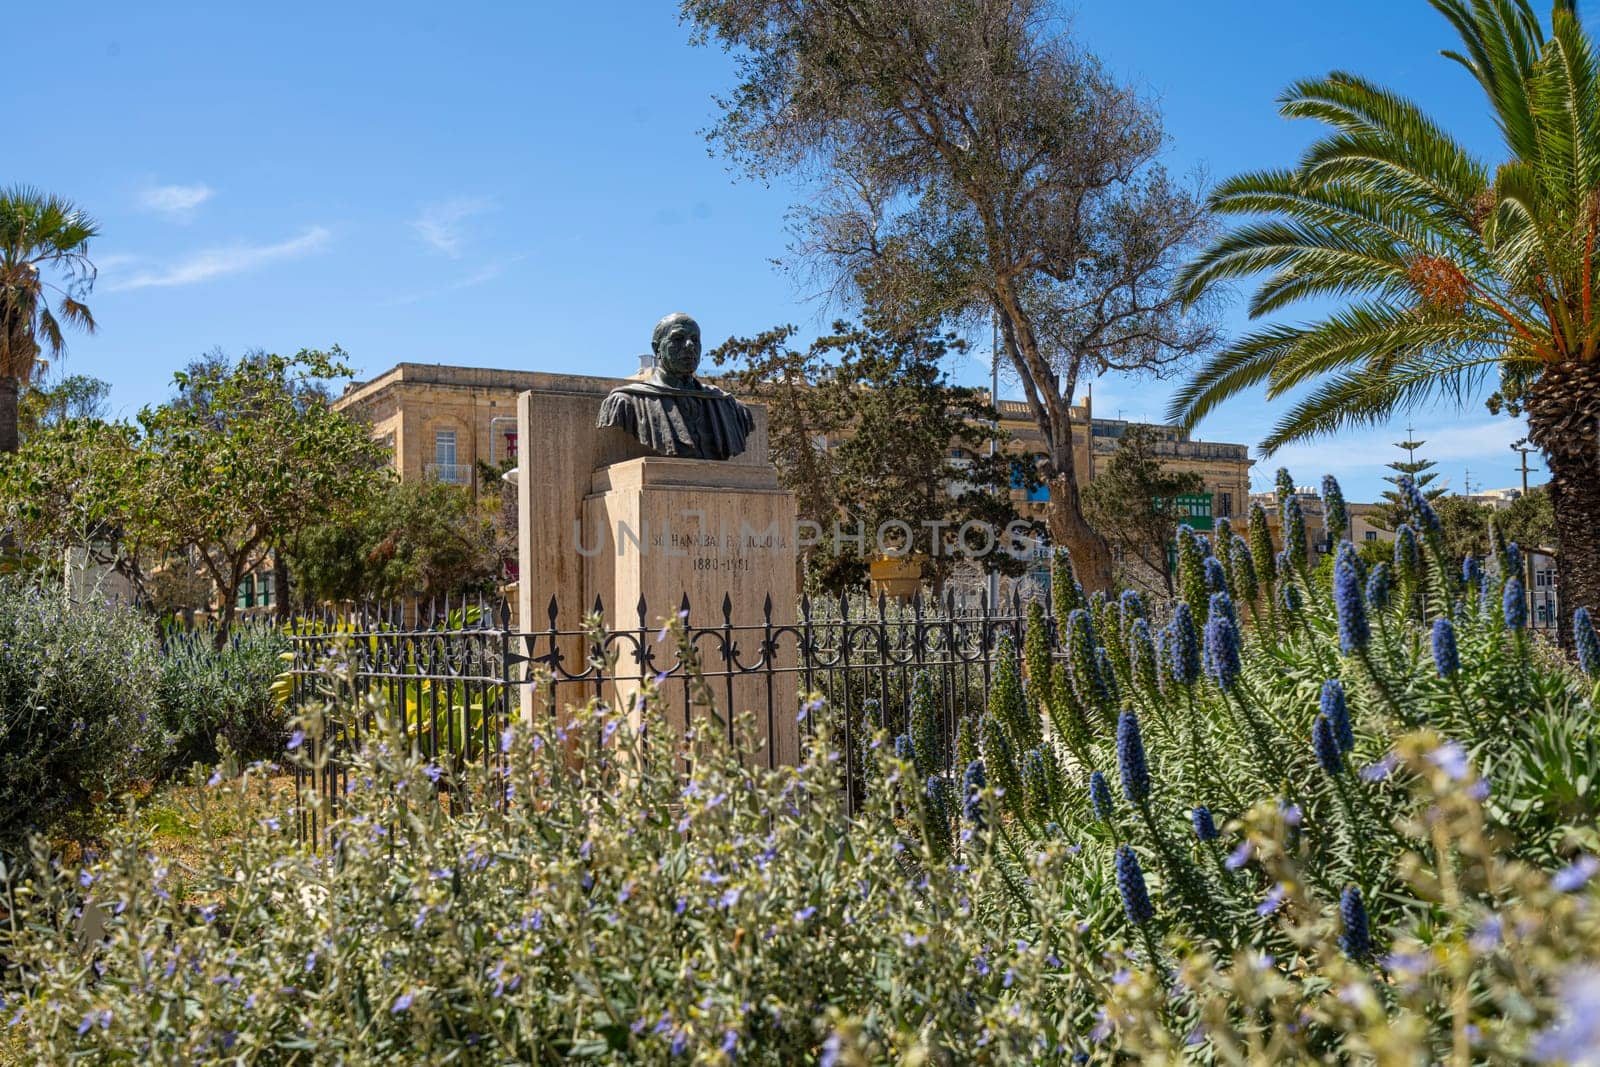 The Maglio gardens in Valletta, Malta by sergiodv